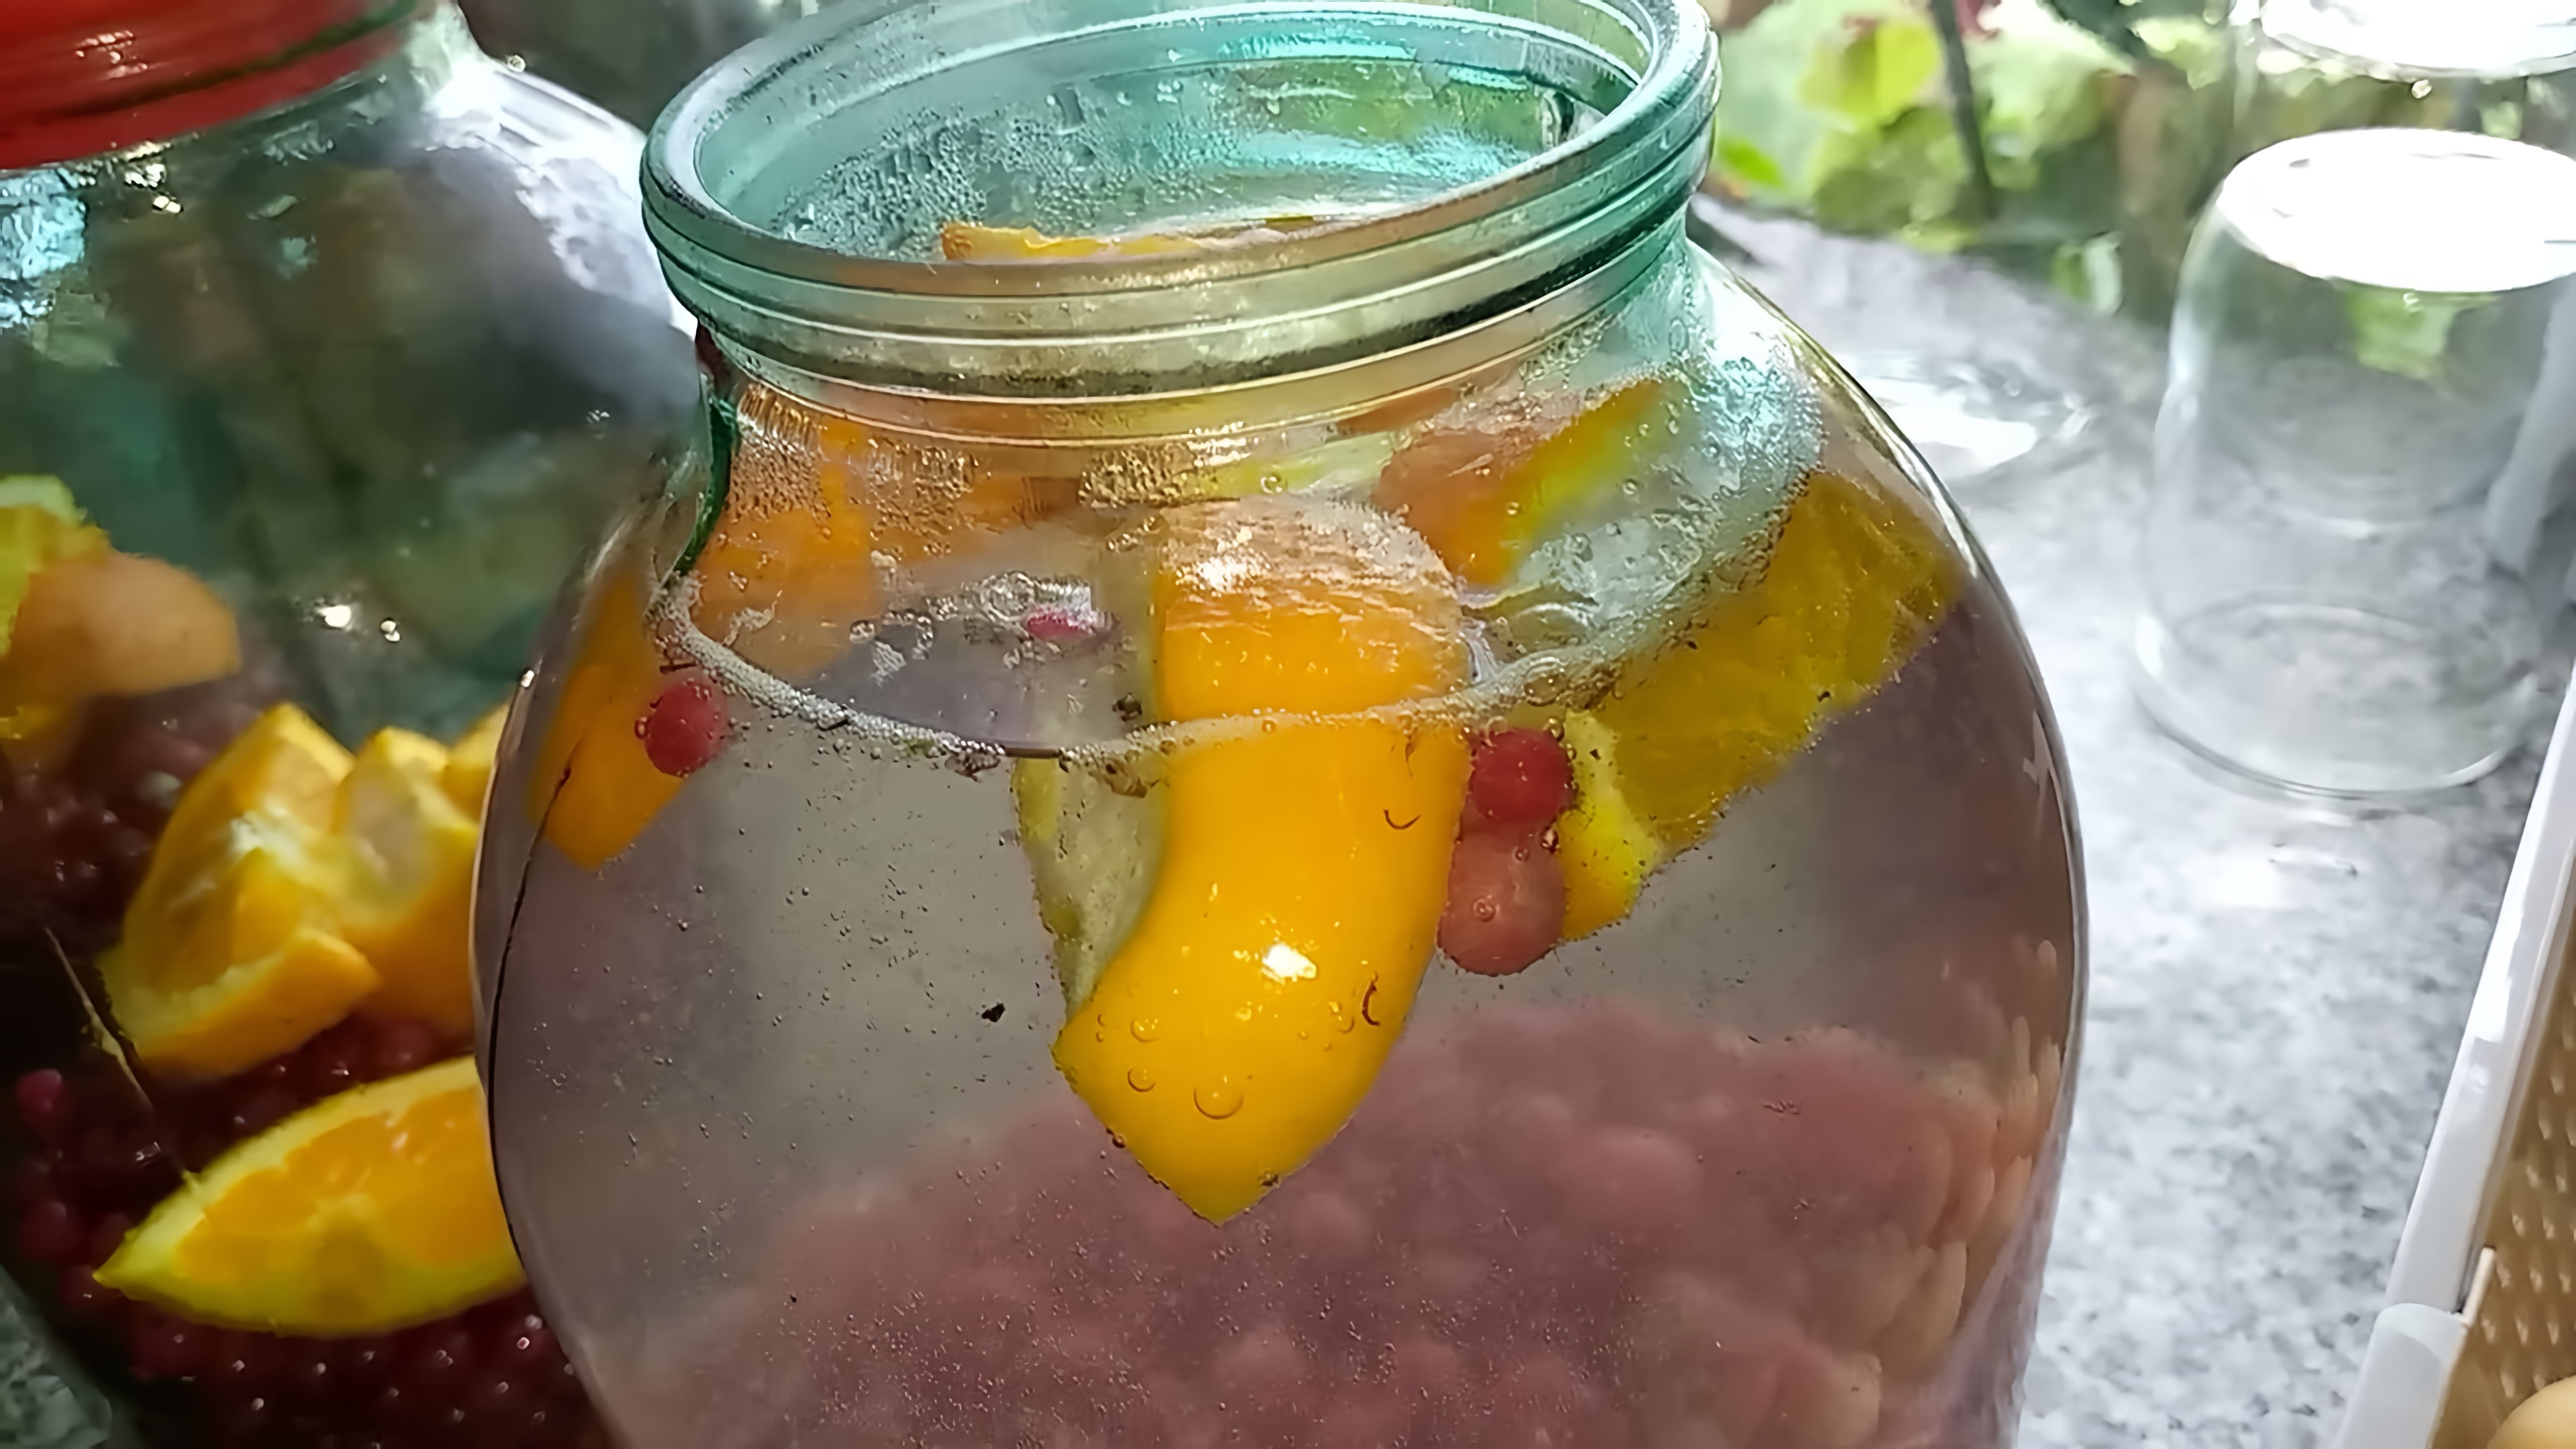 В этом видео демонстрируется процесс приготовления компота из красной смородины и апельсина